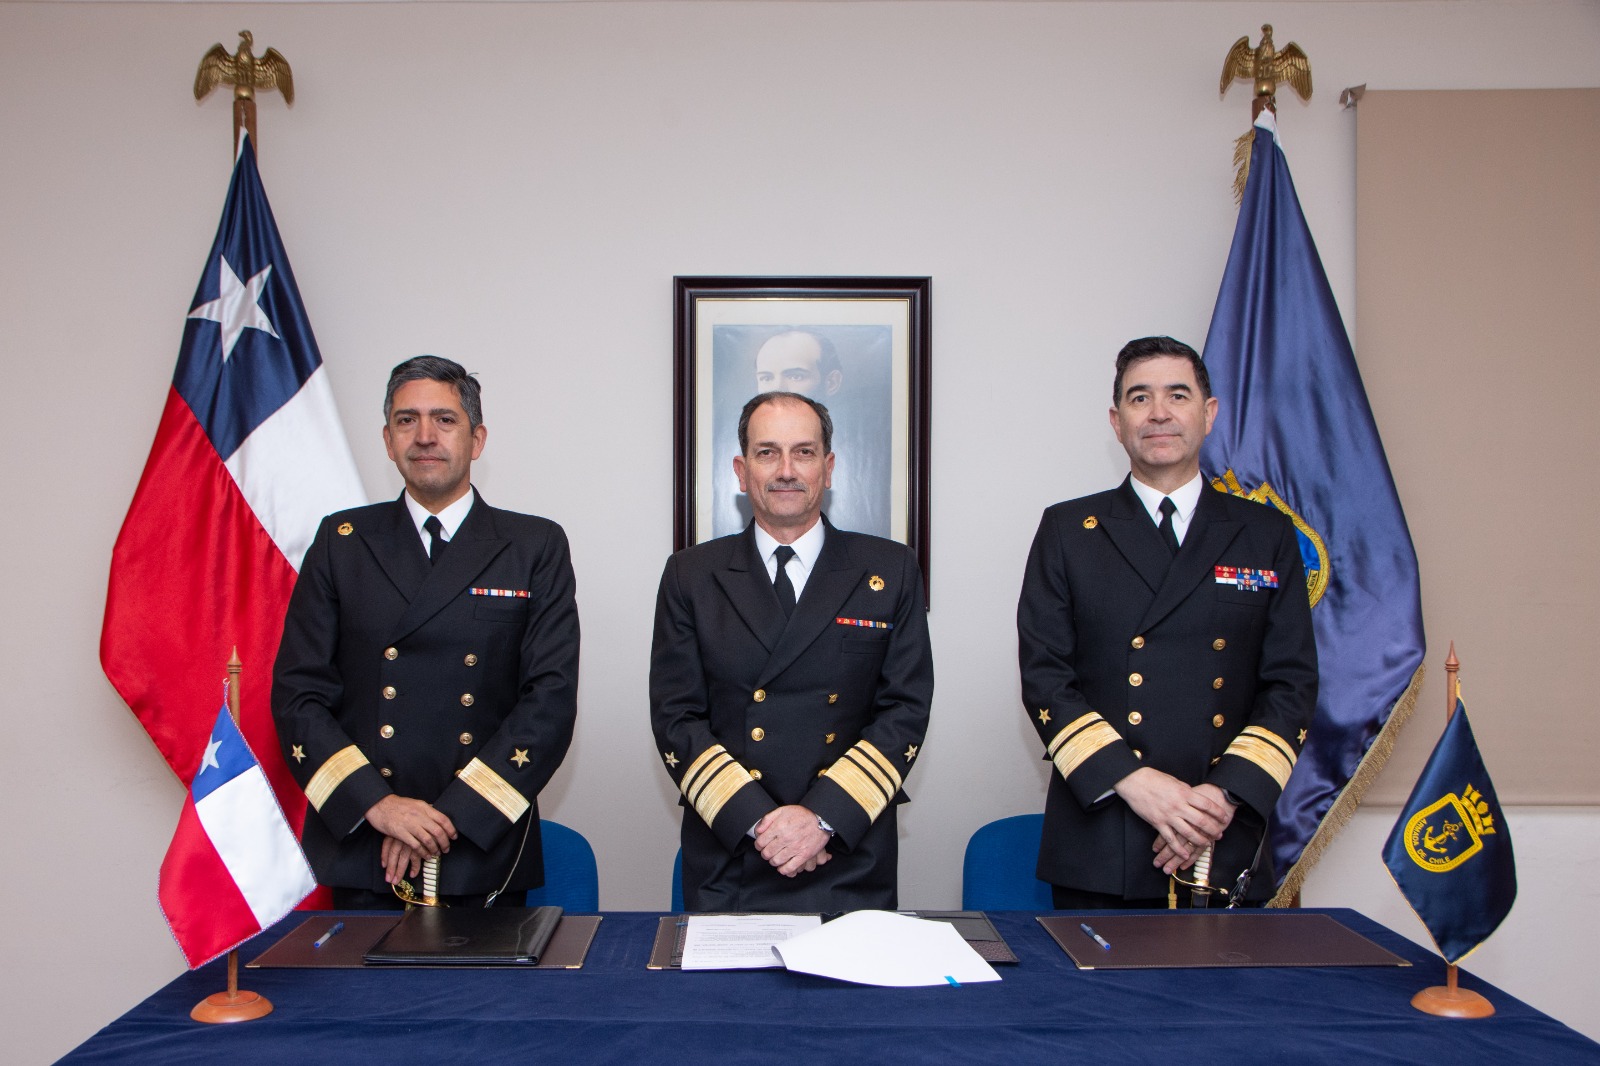 En el Destacamento de Infantería de Marina N°4 “Cochrane” de Punta Arenas se realizó ceremonia de cambio de mando de la Comandancia en Jefe de la III Zona Naval